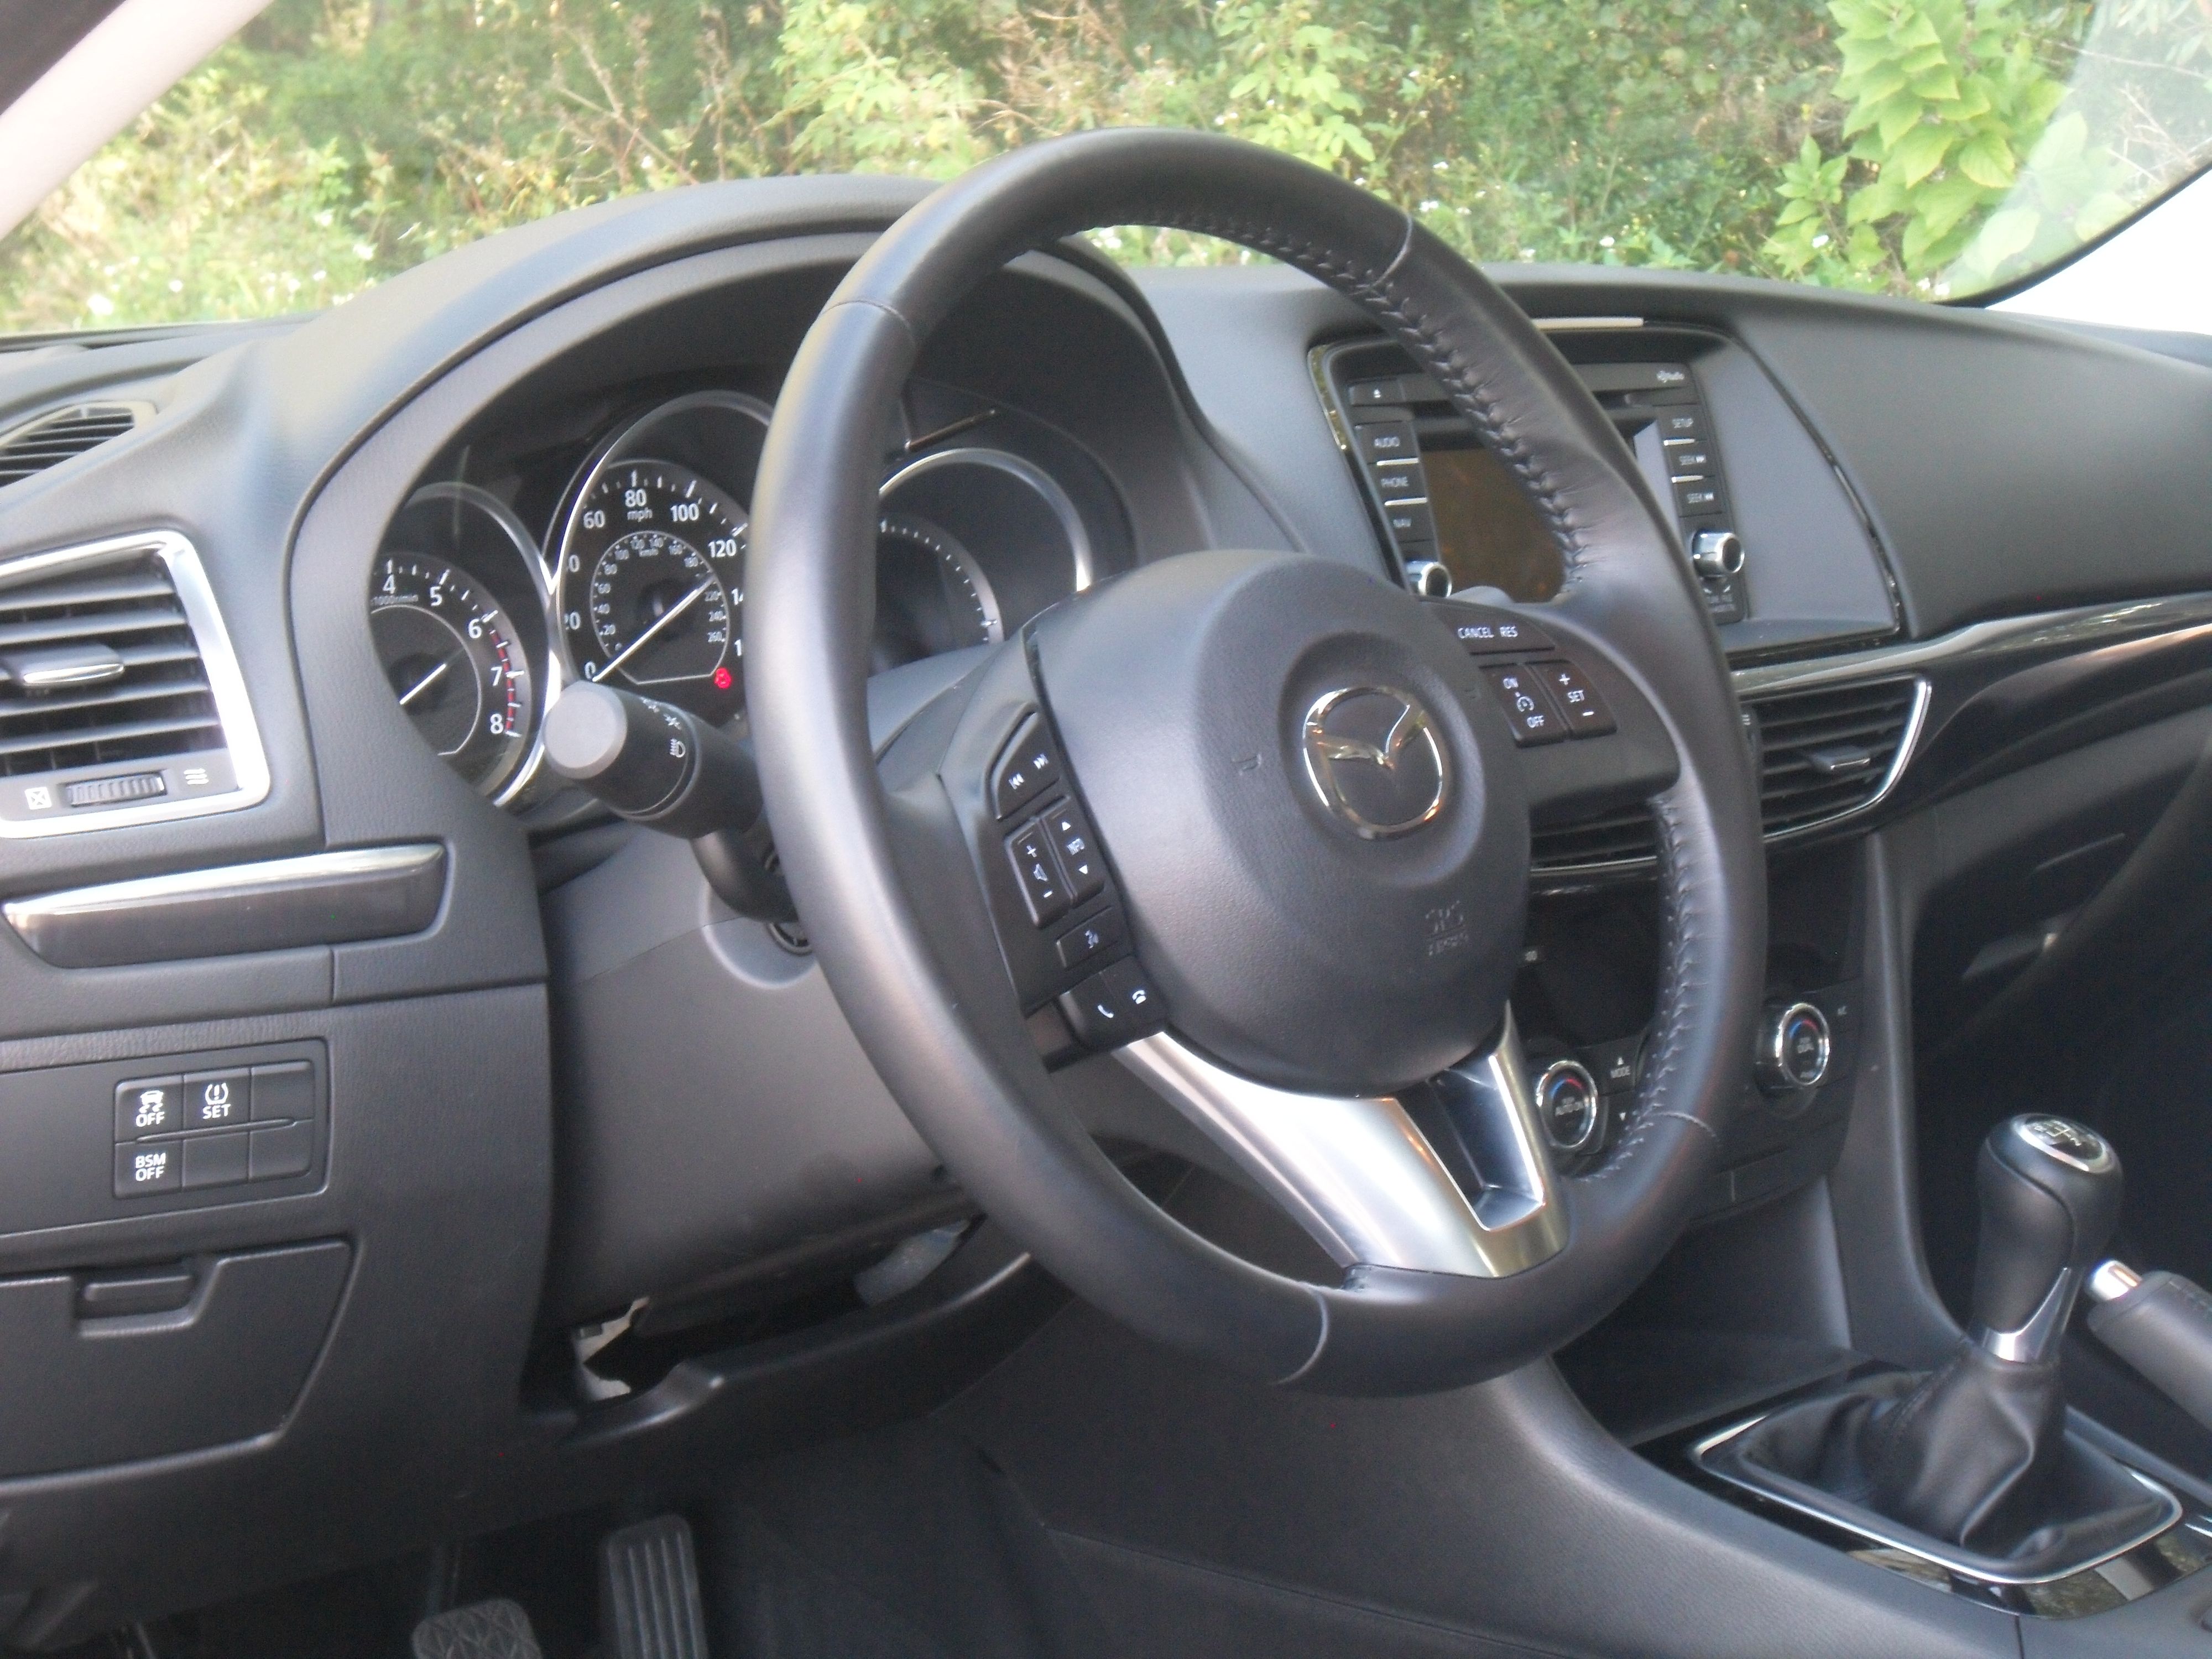 2014 Mazda6 i Touring - Driven